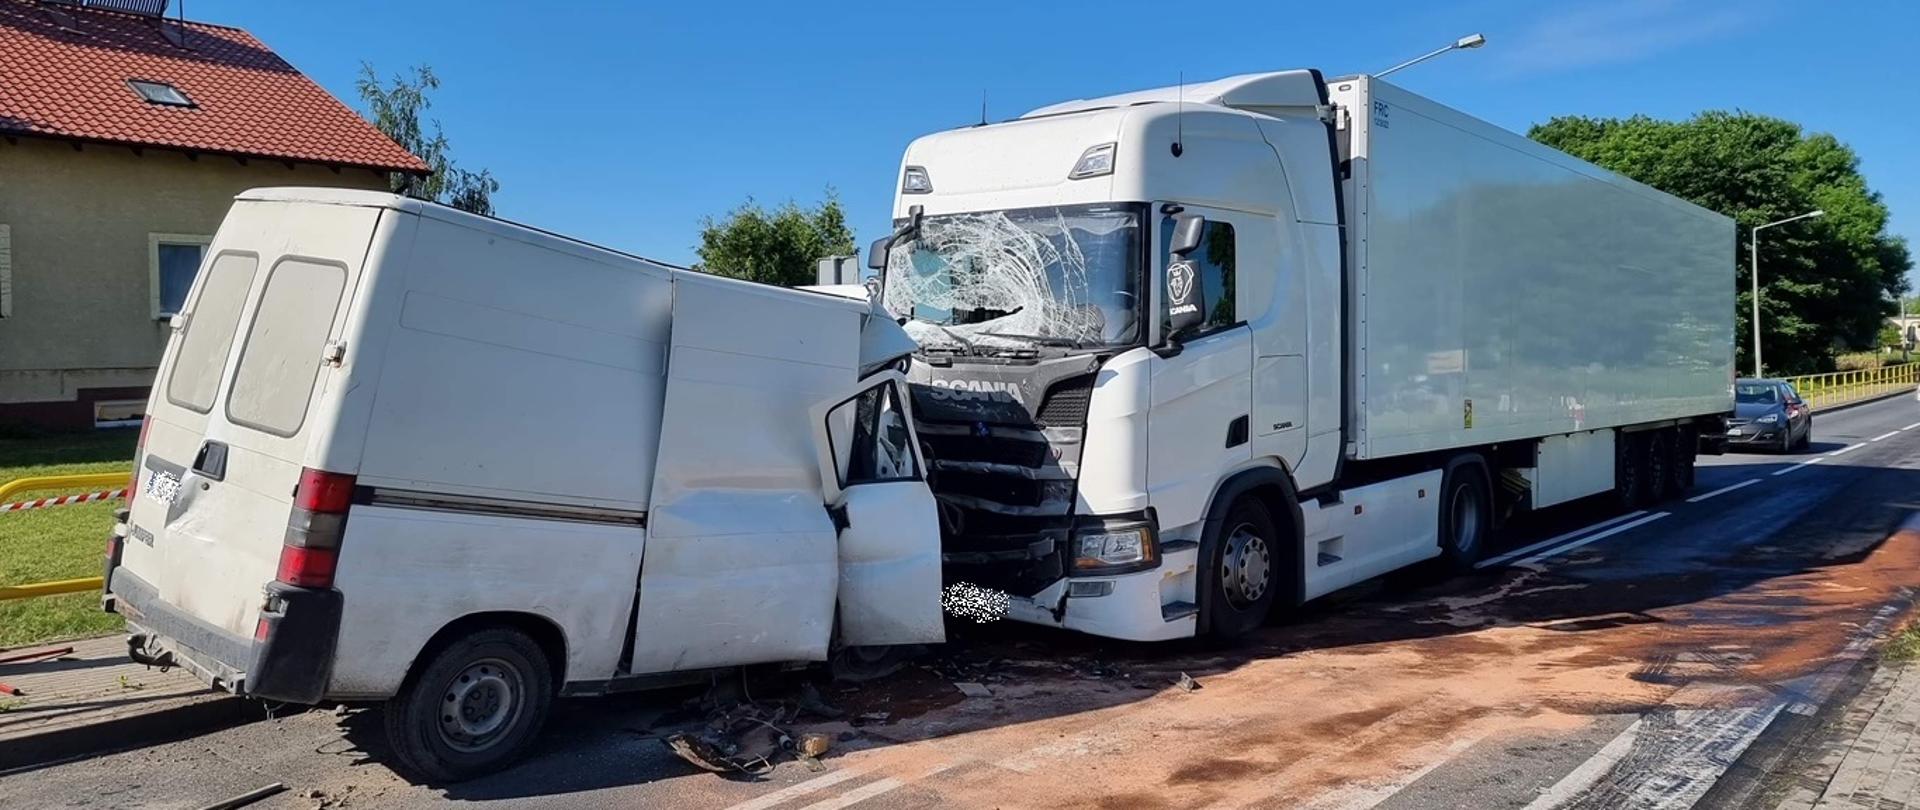 Wypadek samochodu dostawczego z ciężarowym w Mogilnie